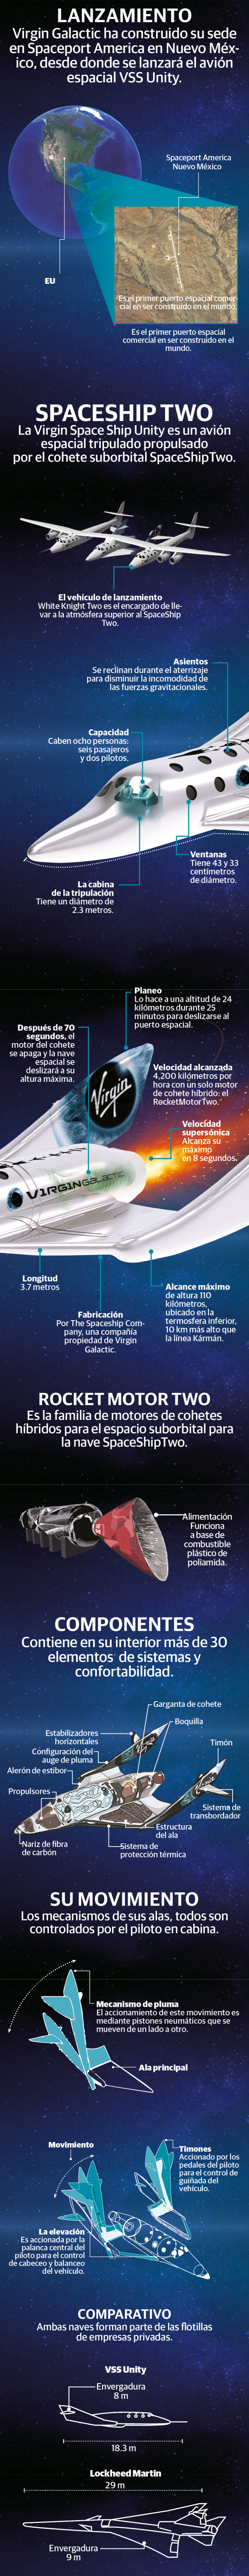 Así es SpaceShip, la nave de Virgin Galactic que arranca vuelos comerciales…¡al espacio!